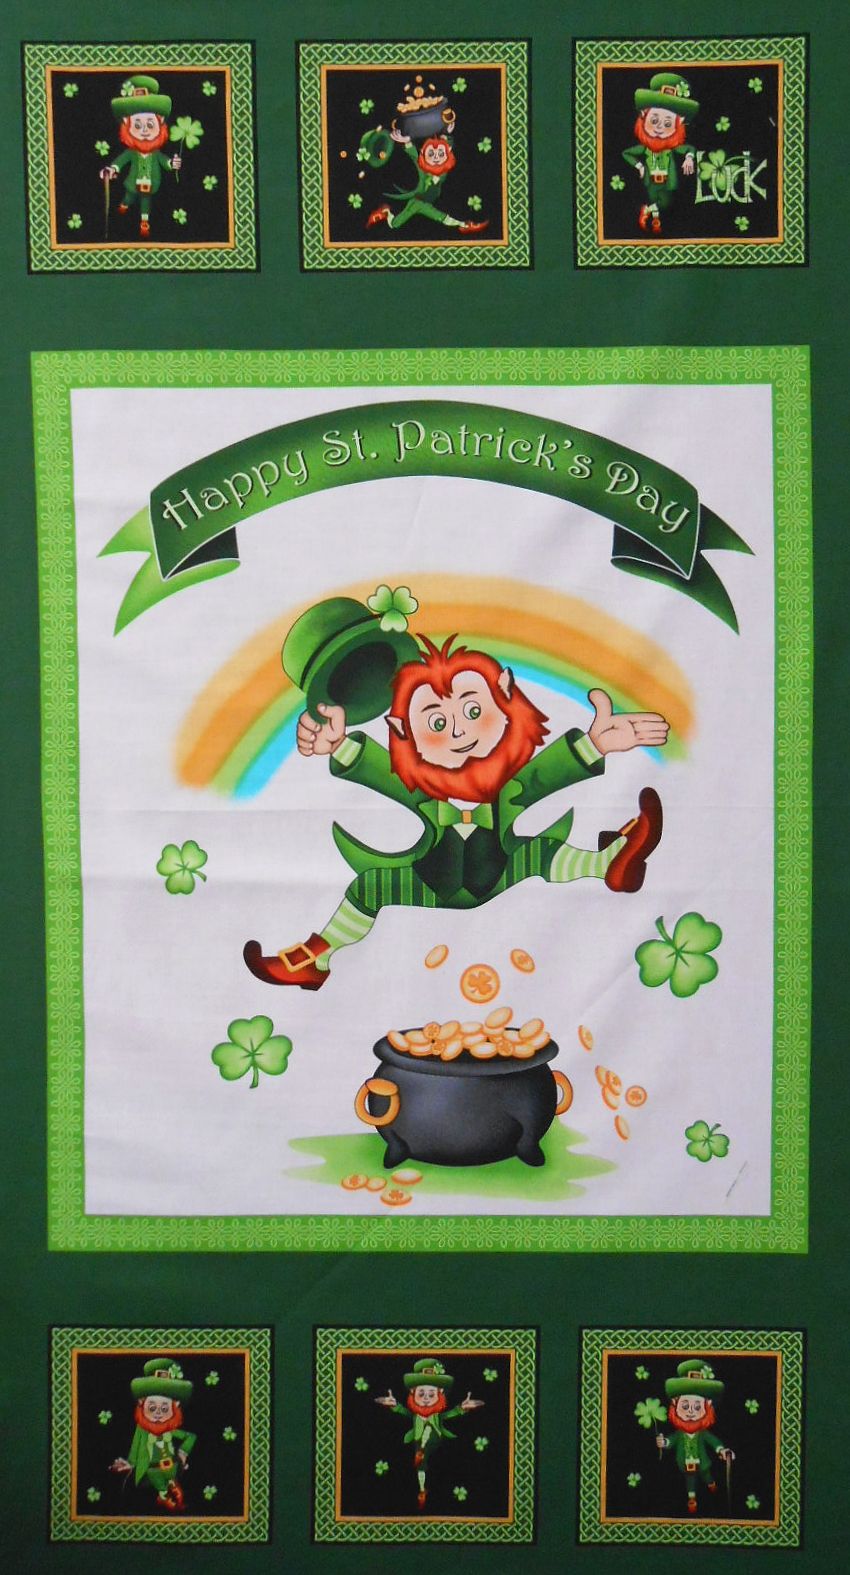 Patrick's Day Kleeblatt Ireland 120705713 Minihut Haarreif St Widmann S.r.l 